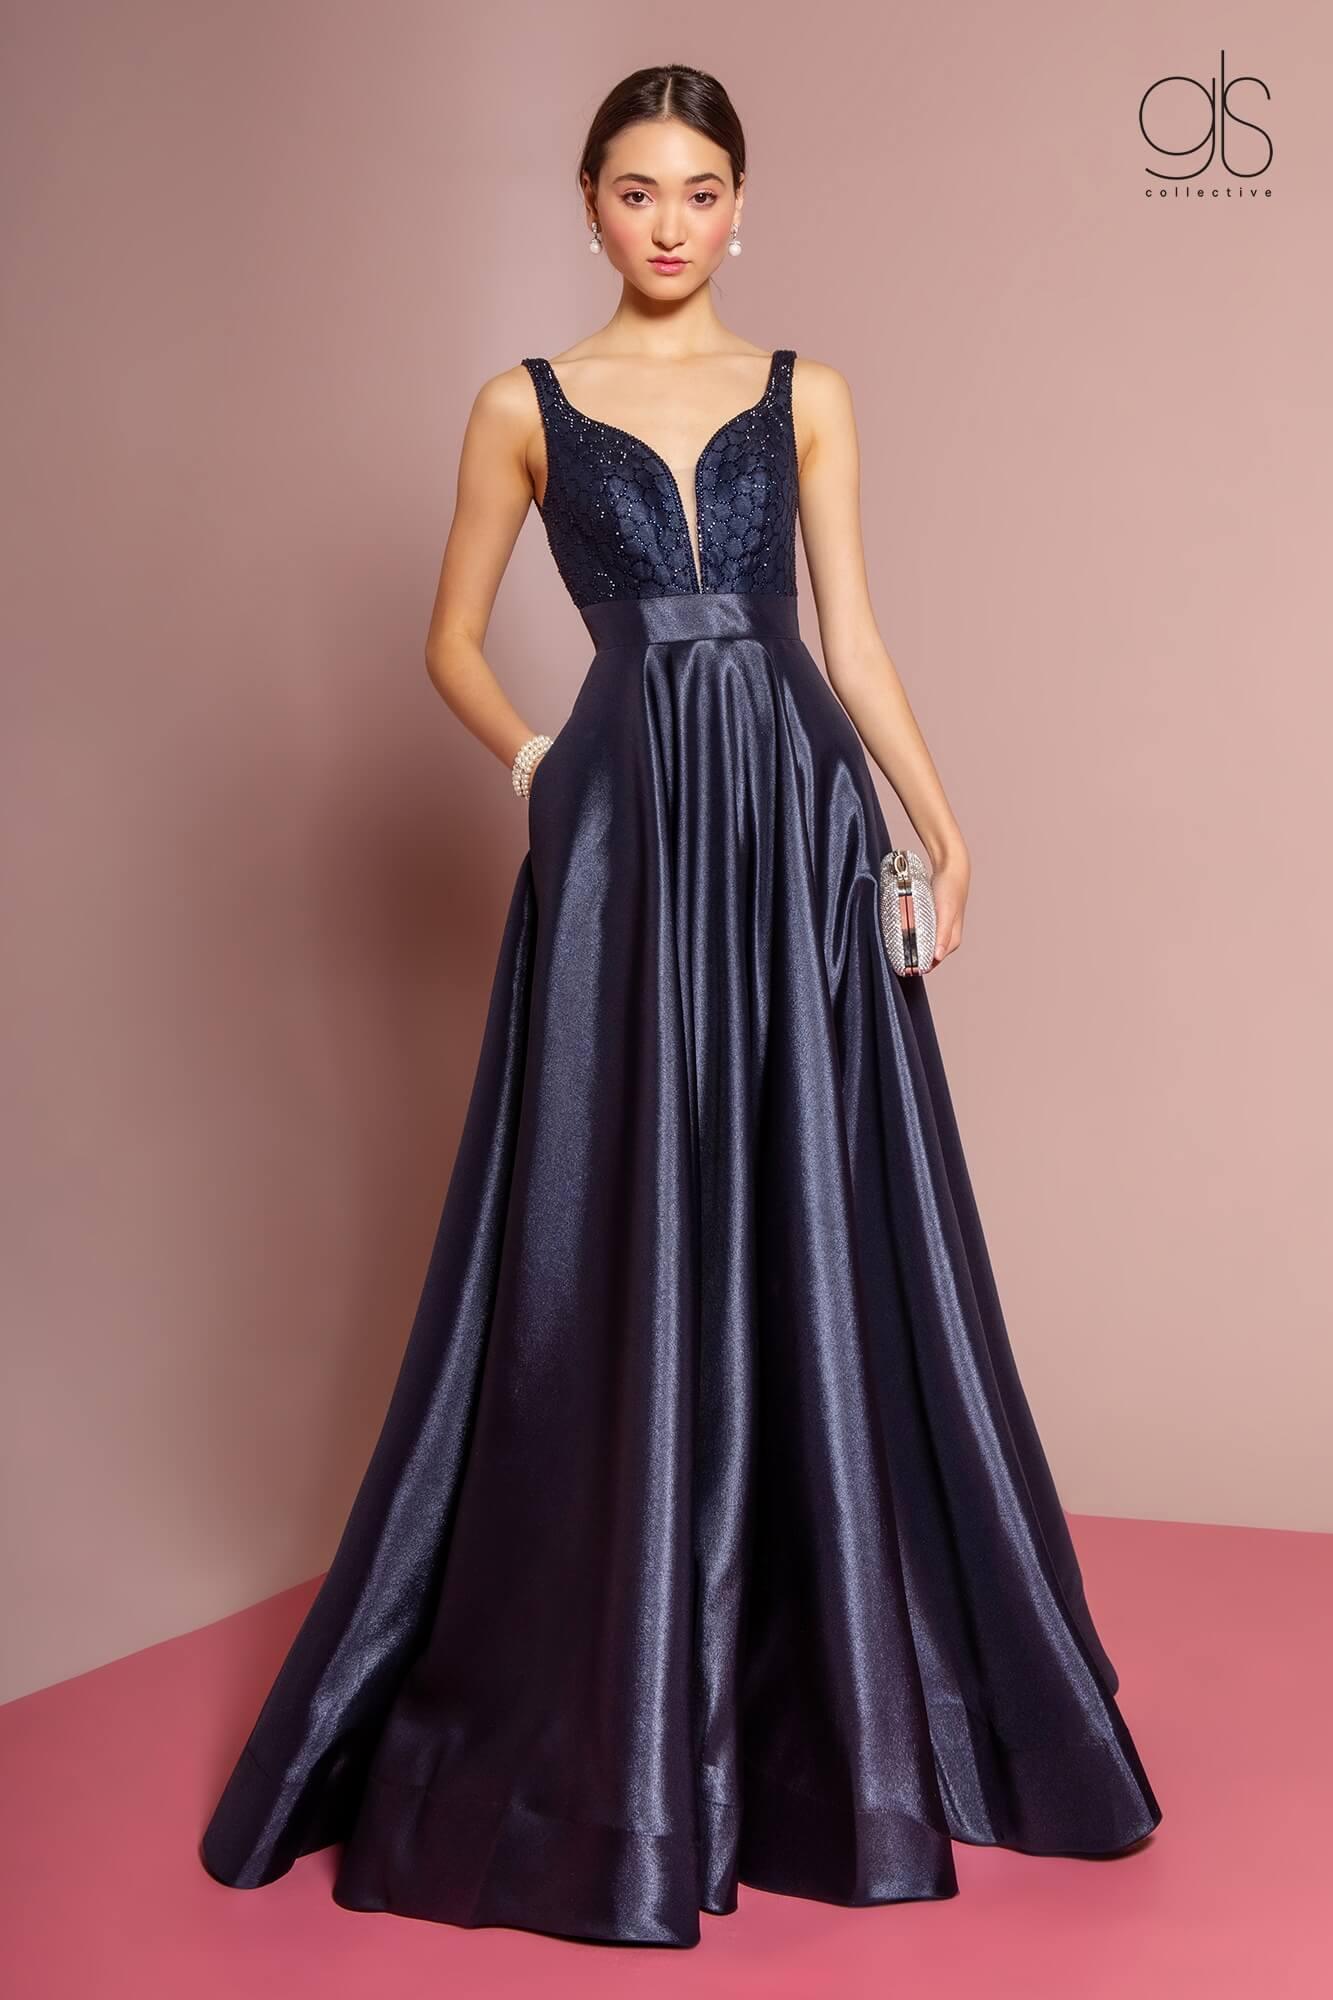 Prom Long Formal Evening Dress with Pockets - The Dress Outlet Elizabeth K